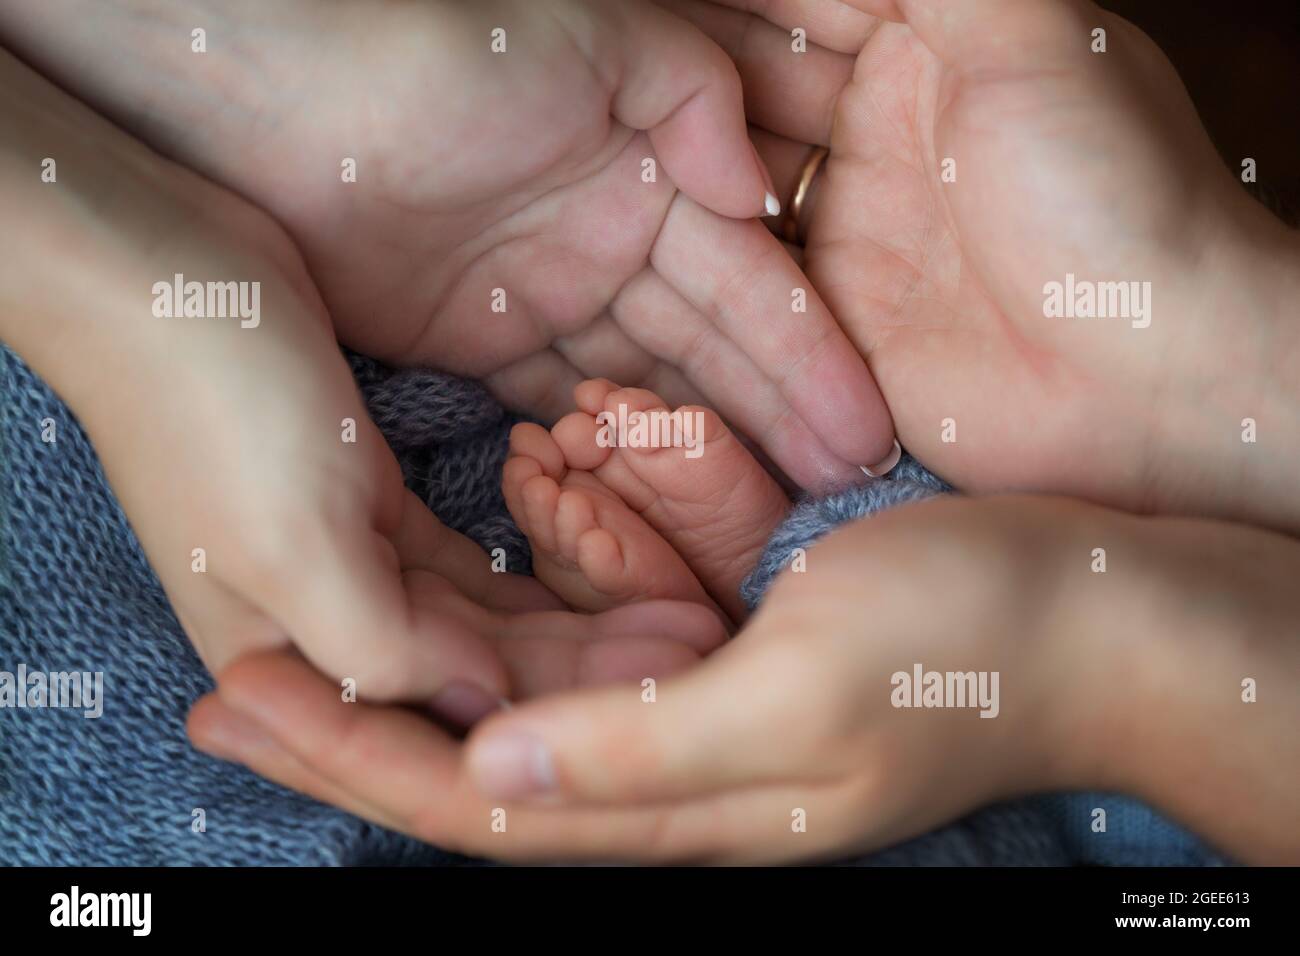 Les petits pieds d'un nouveau-né dans les mains d'un parent. Bébé d'une semaine. Banque D'Images